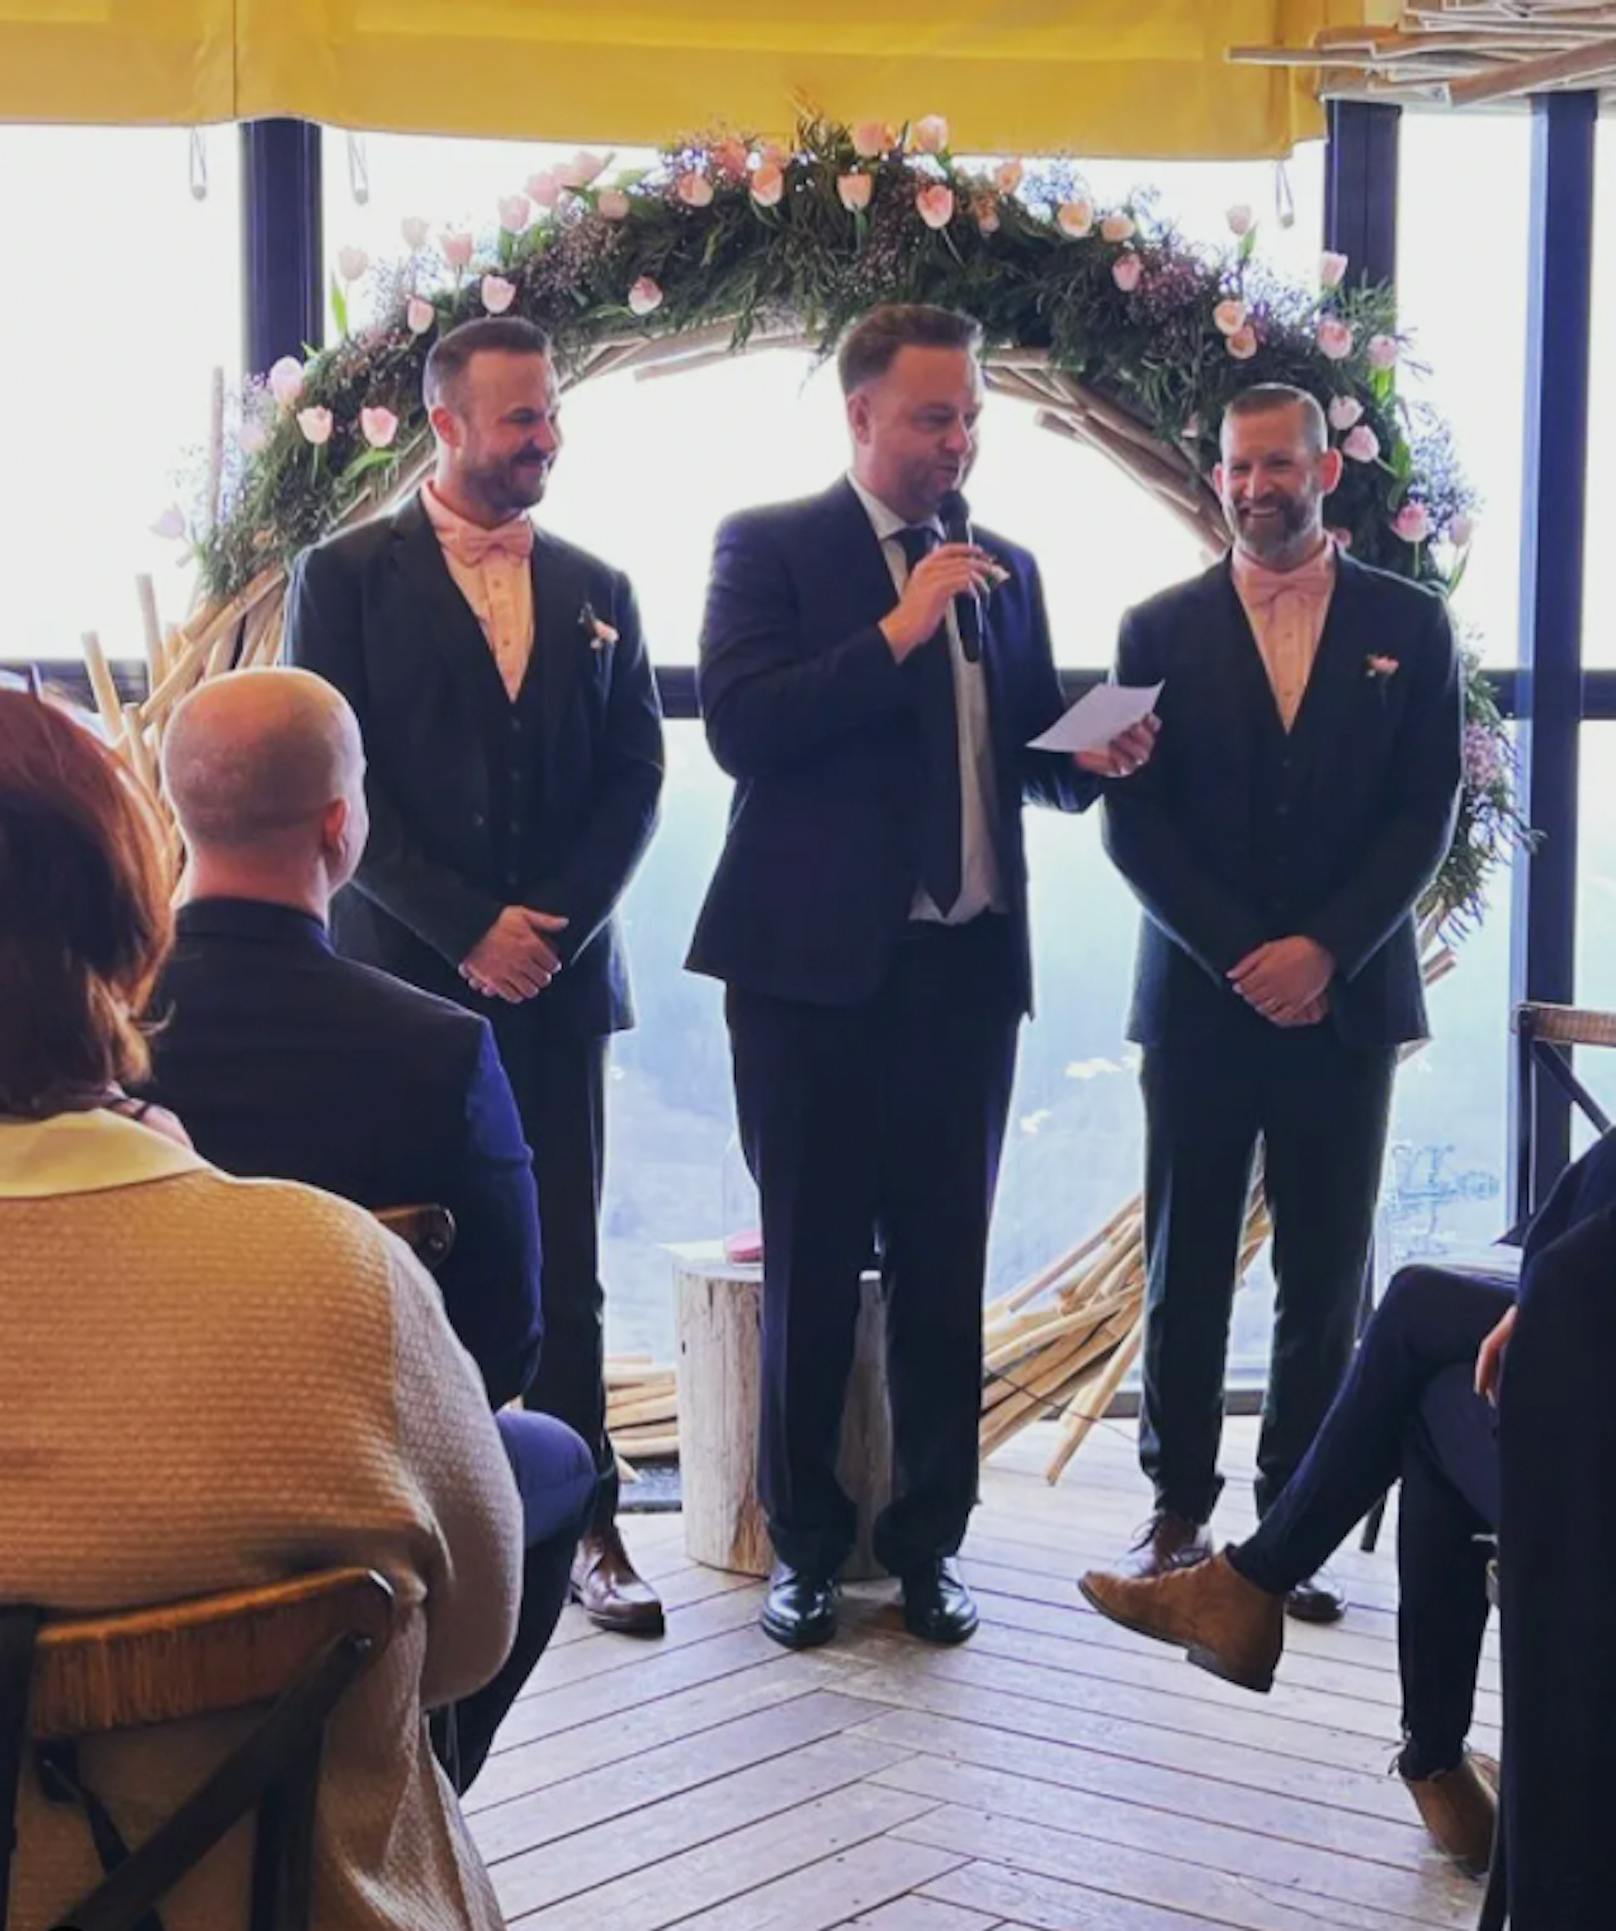 SP-Politiker Mario Lindner (Mitte) sprang für Conchita Wurst bei der Hochzeitsrede ihrer gemeinsamen Freunde Florian und Andreas (v.l.) ein.